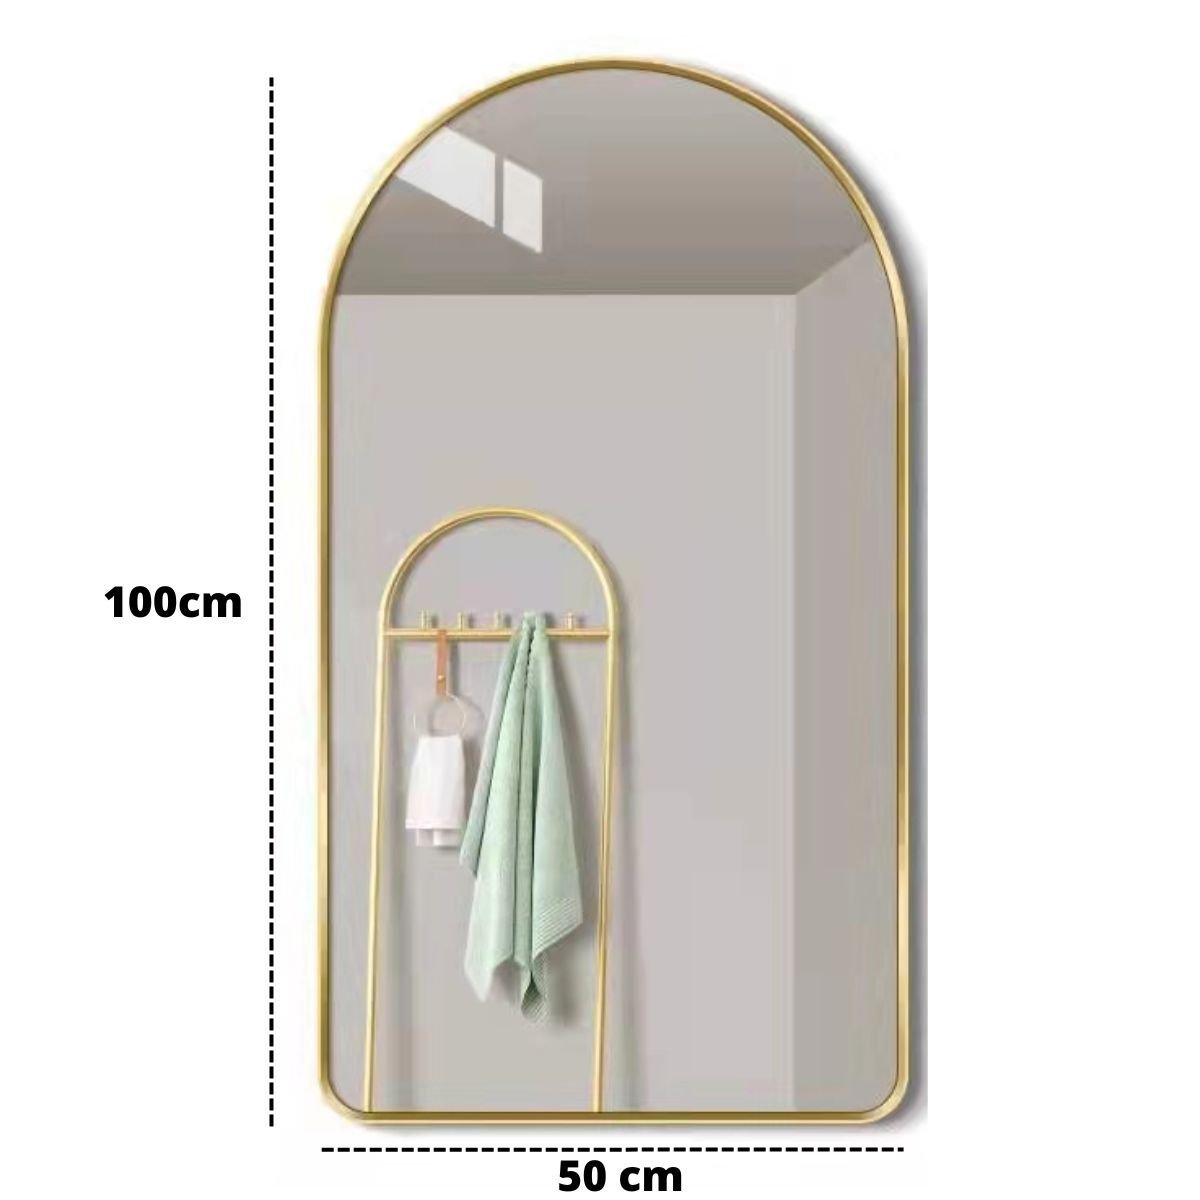 Espelho Decorativo Oval Janela Base Reta com Moldura Metal Dourado 100 X 50 Cm - 5